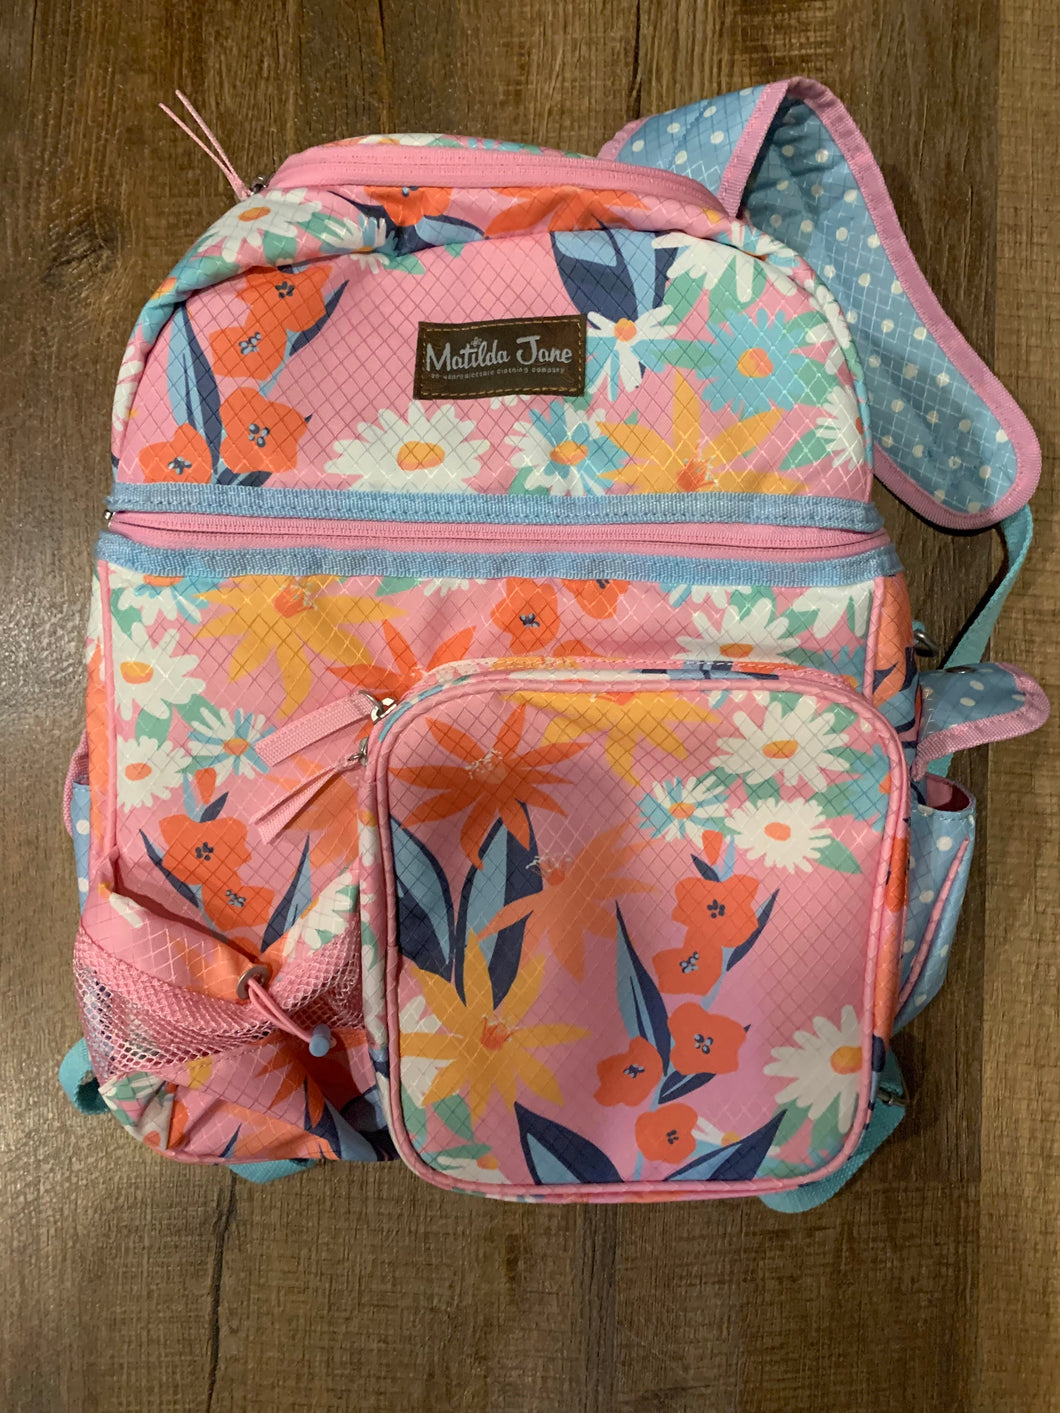 Matilda Jane Cooler backpack